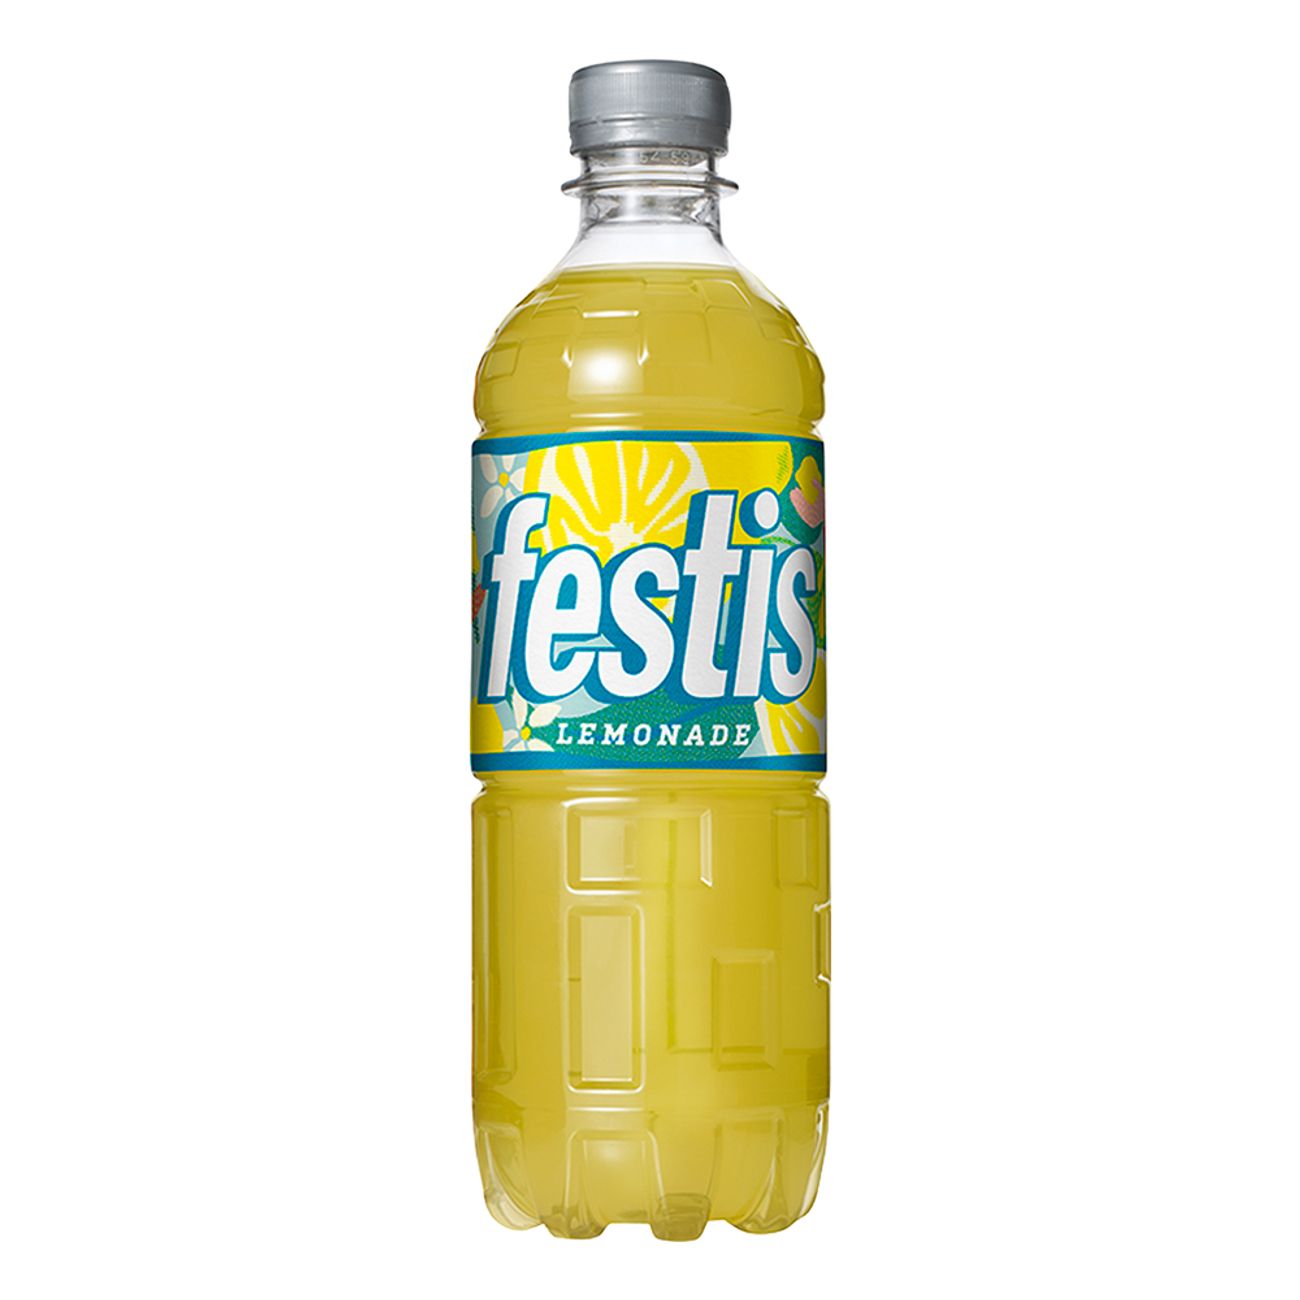 festis-lemonade-88758-1